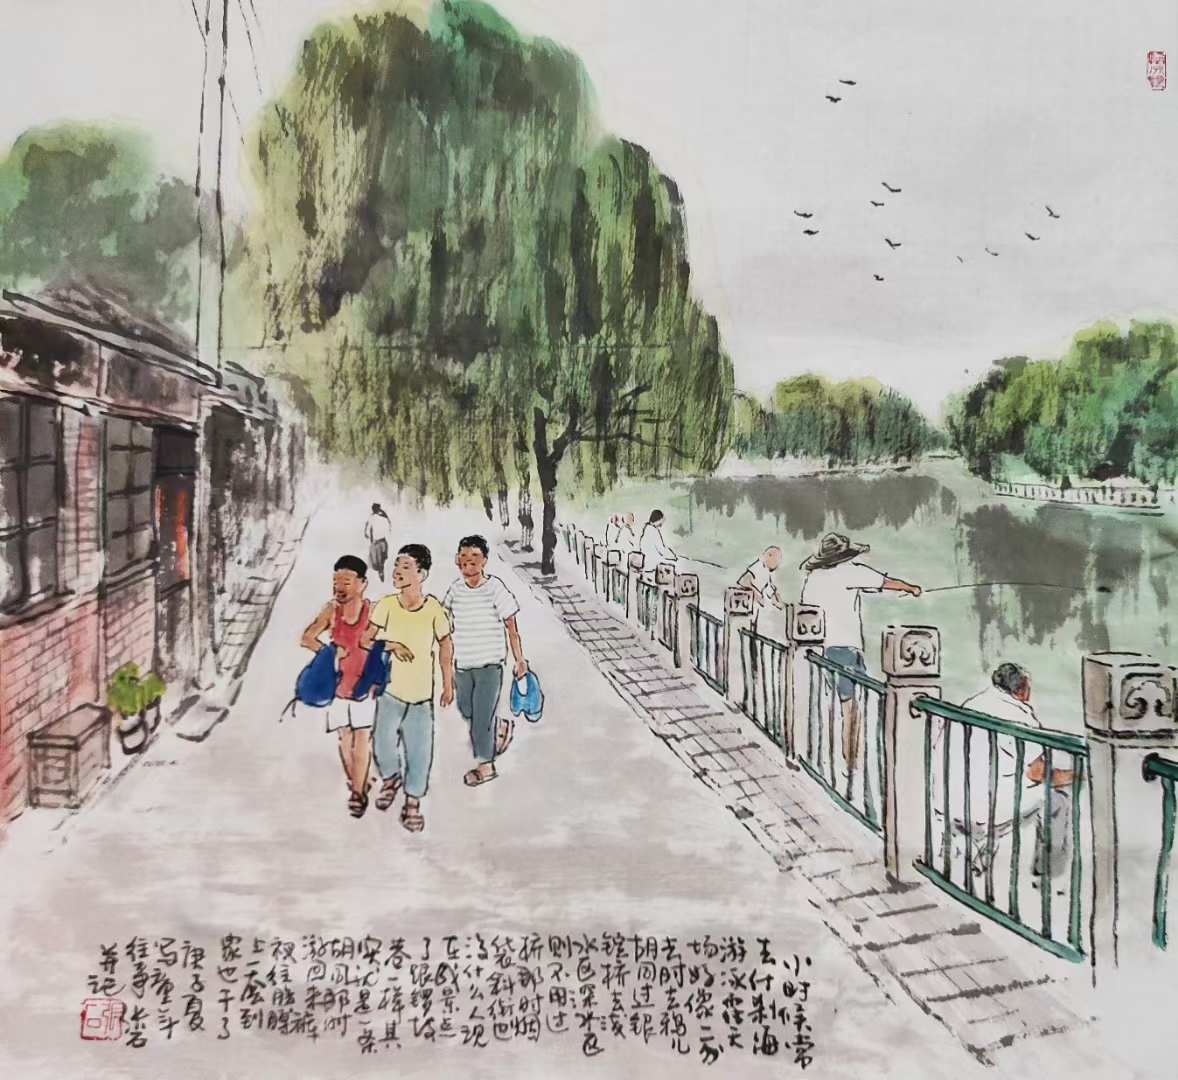 北京四季分明，发几幅只有夏天才能干的:游泳、捉蛐蛐儿、上城外护城河玩，下雨了出来打伞玩、雨后叠小船、...